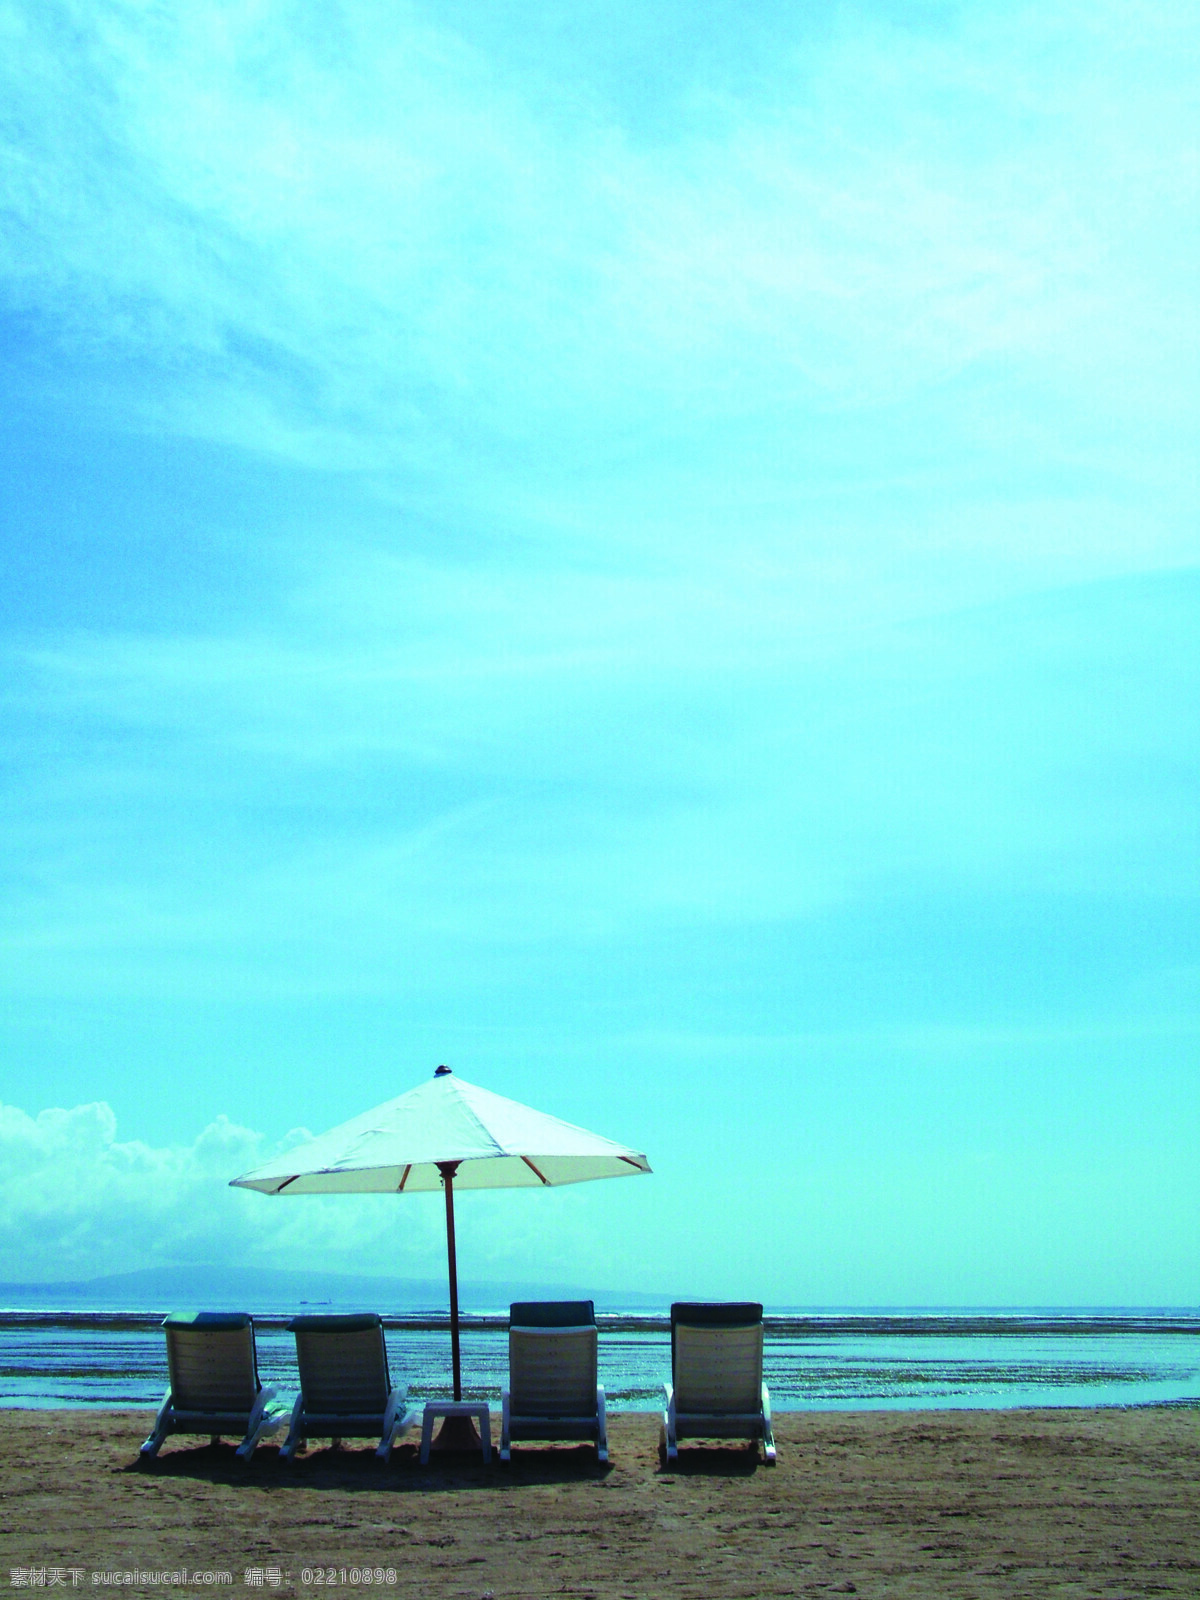 自由 墨镜 轻松 海水 蓝天 海滩 享受 游玩 假日 渡假 风景 椰树 海边 海 风情 风光 夏日